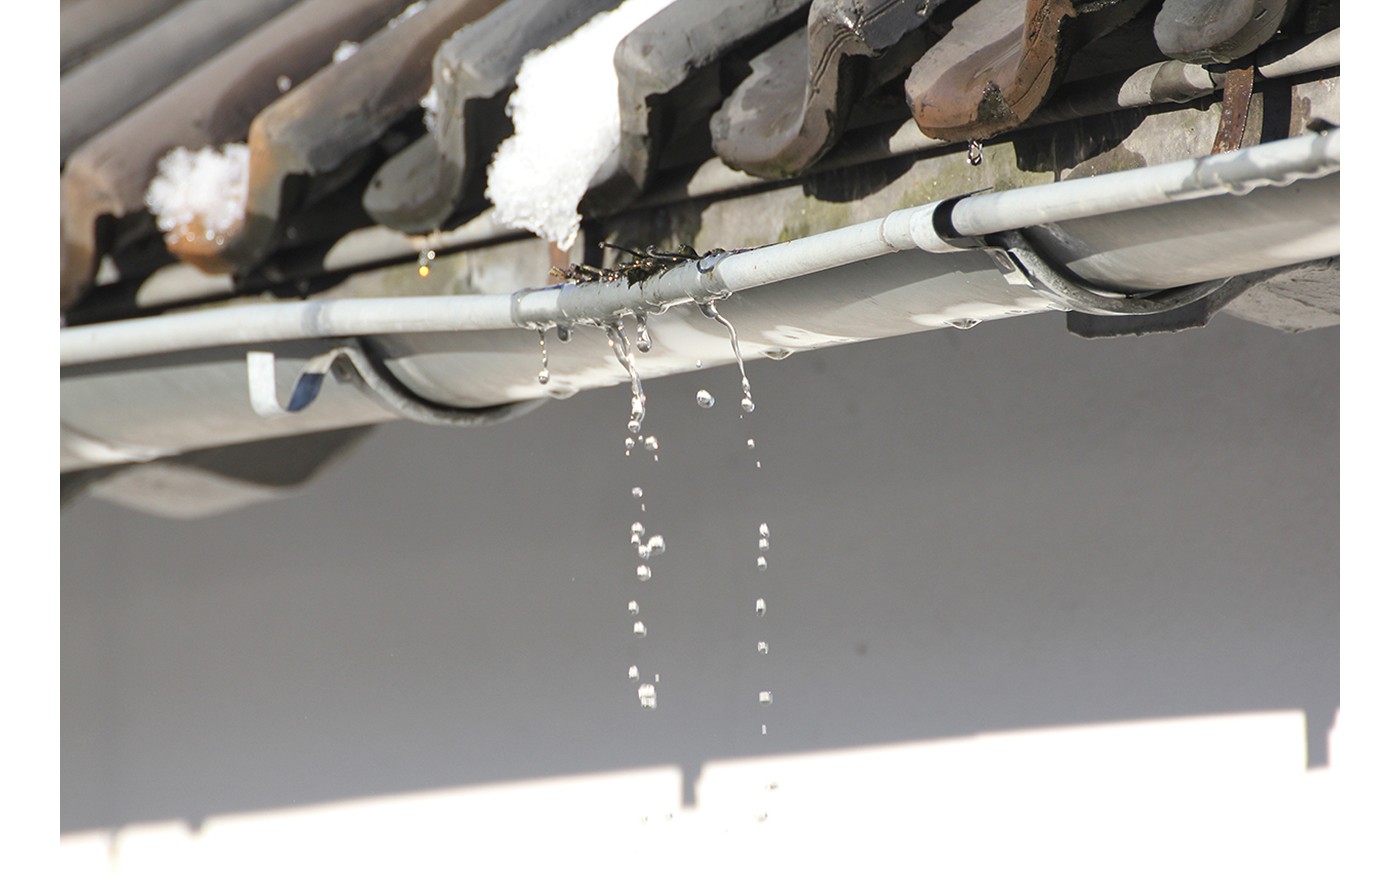 fix gutter gutters leaking joints using sealants